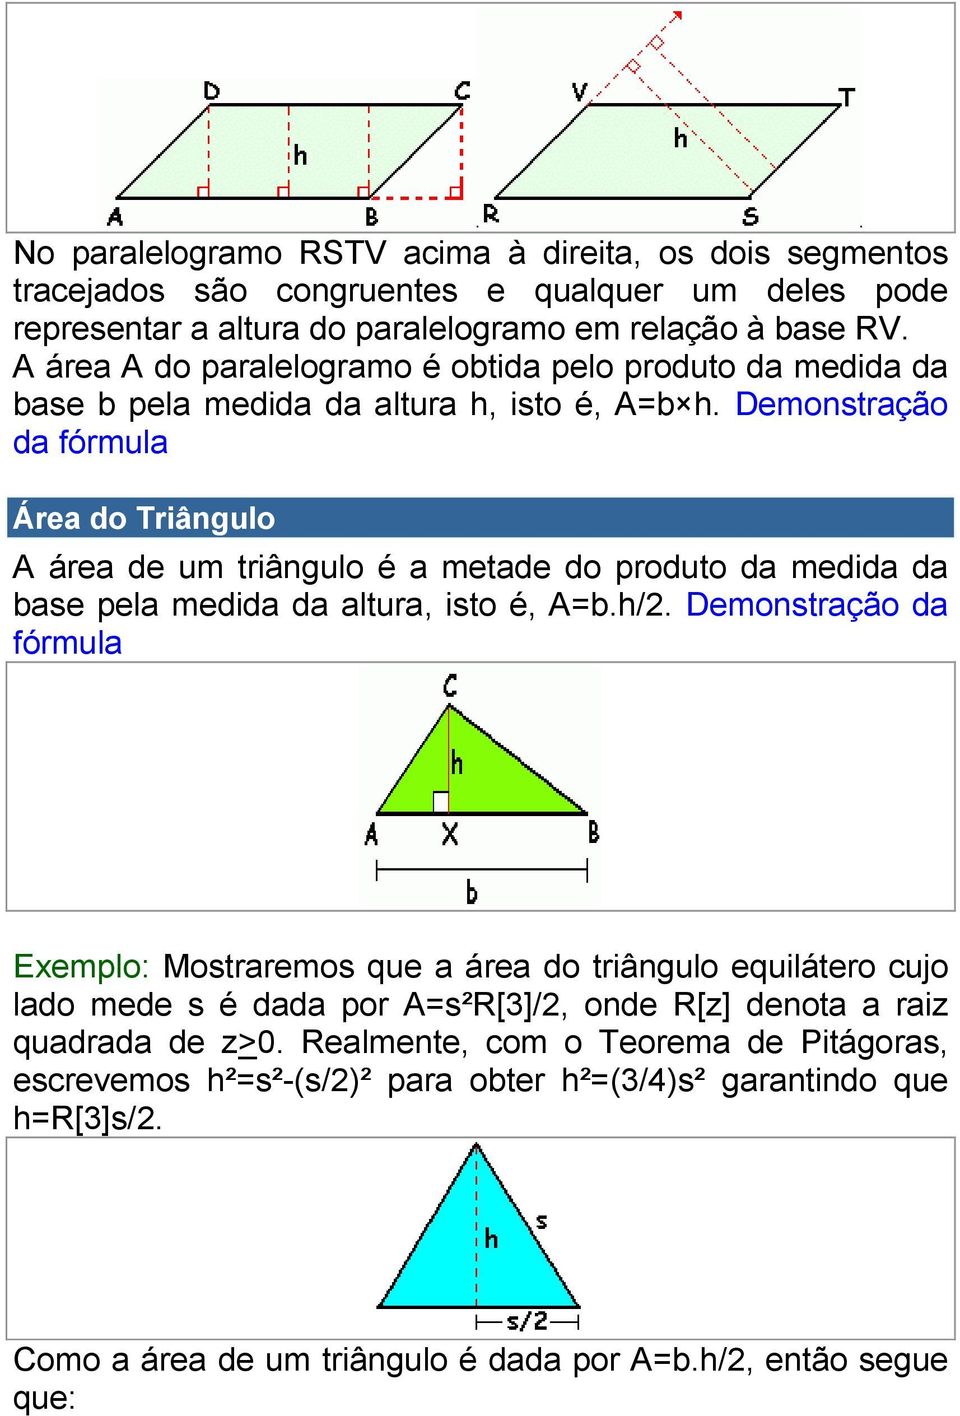 Demonstração da fórmula Área do Triângulo A área de um triângulo é a metade do produto da medida da base pela medida da altura, isto é, A=b.h/2.